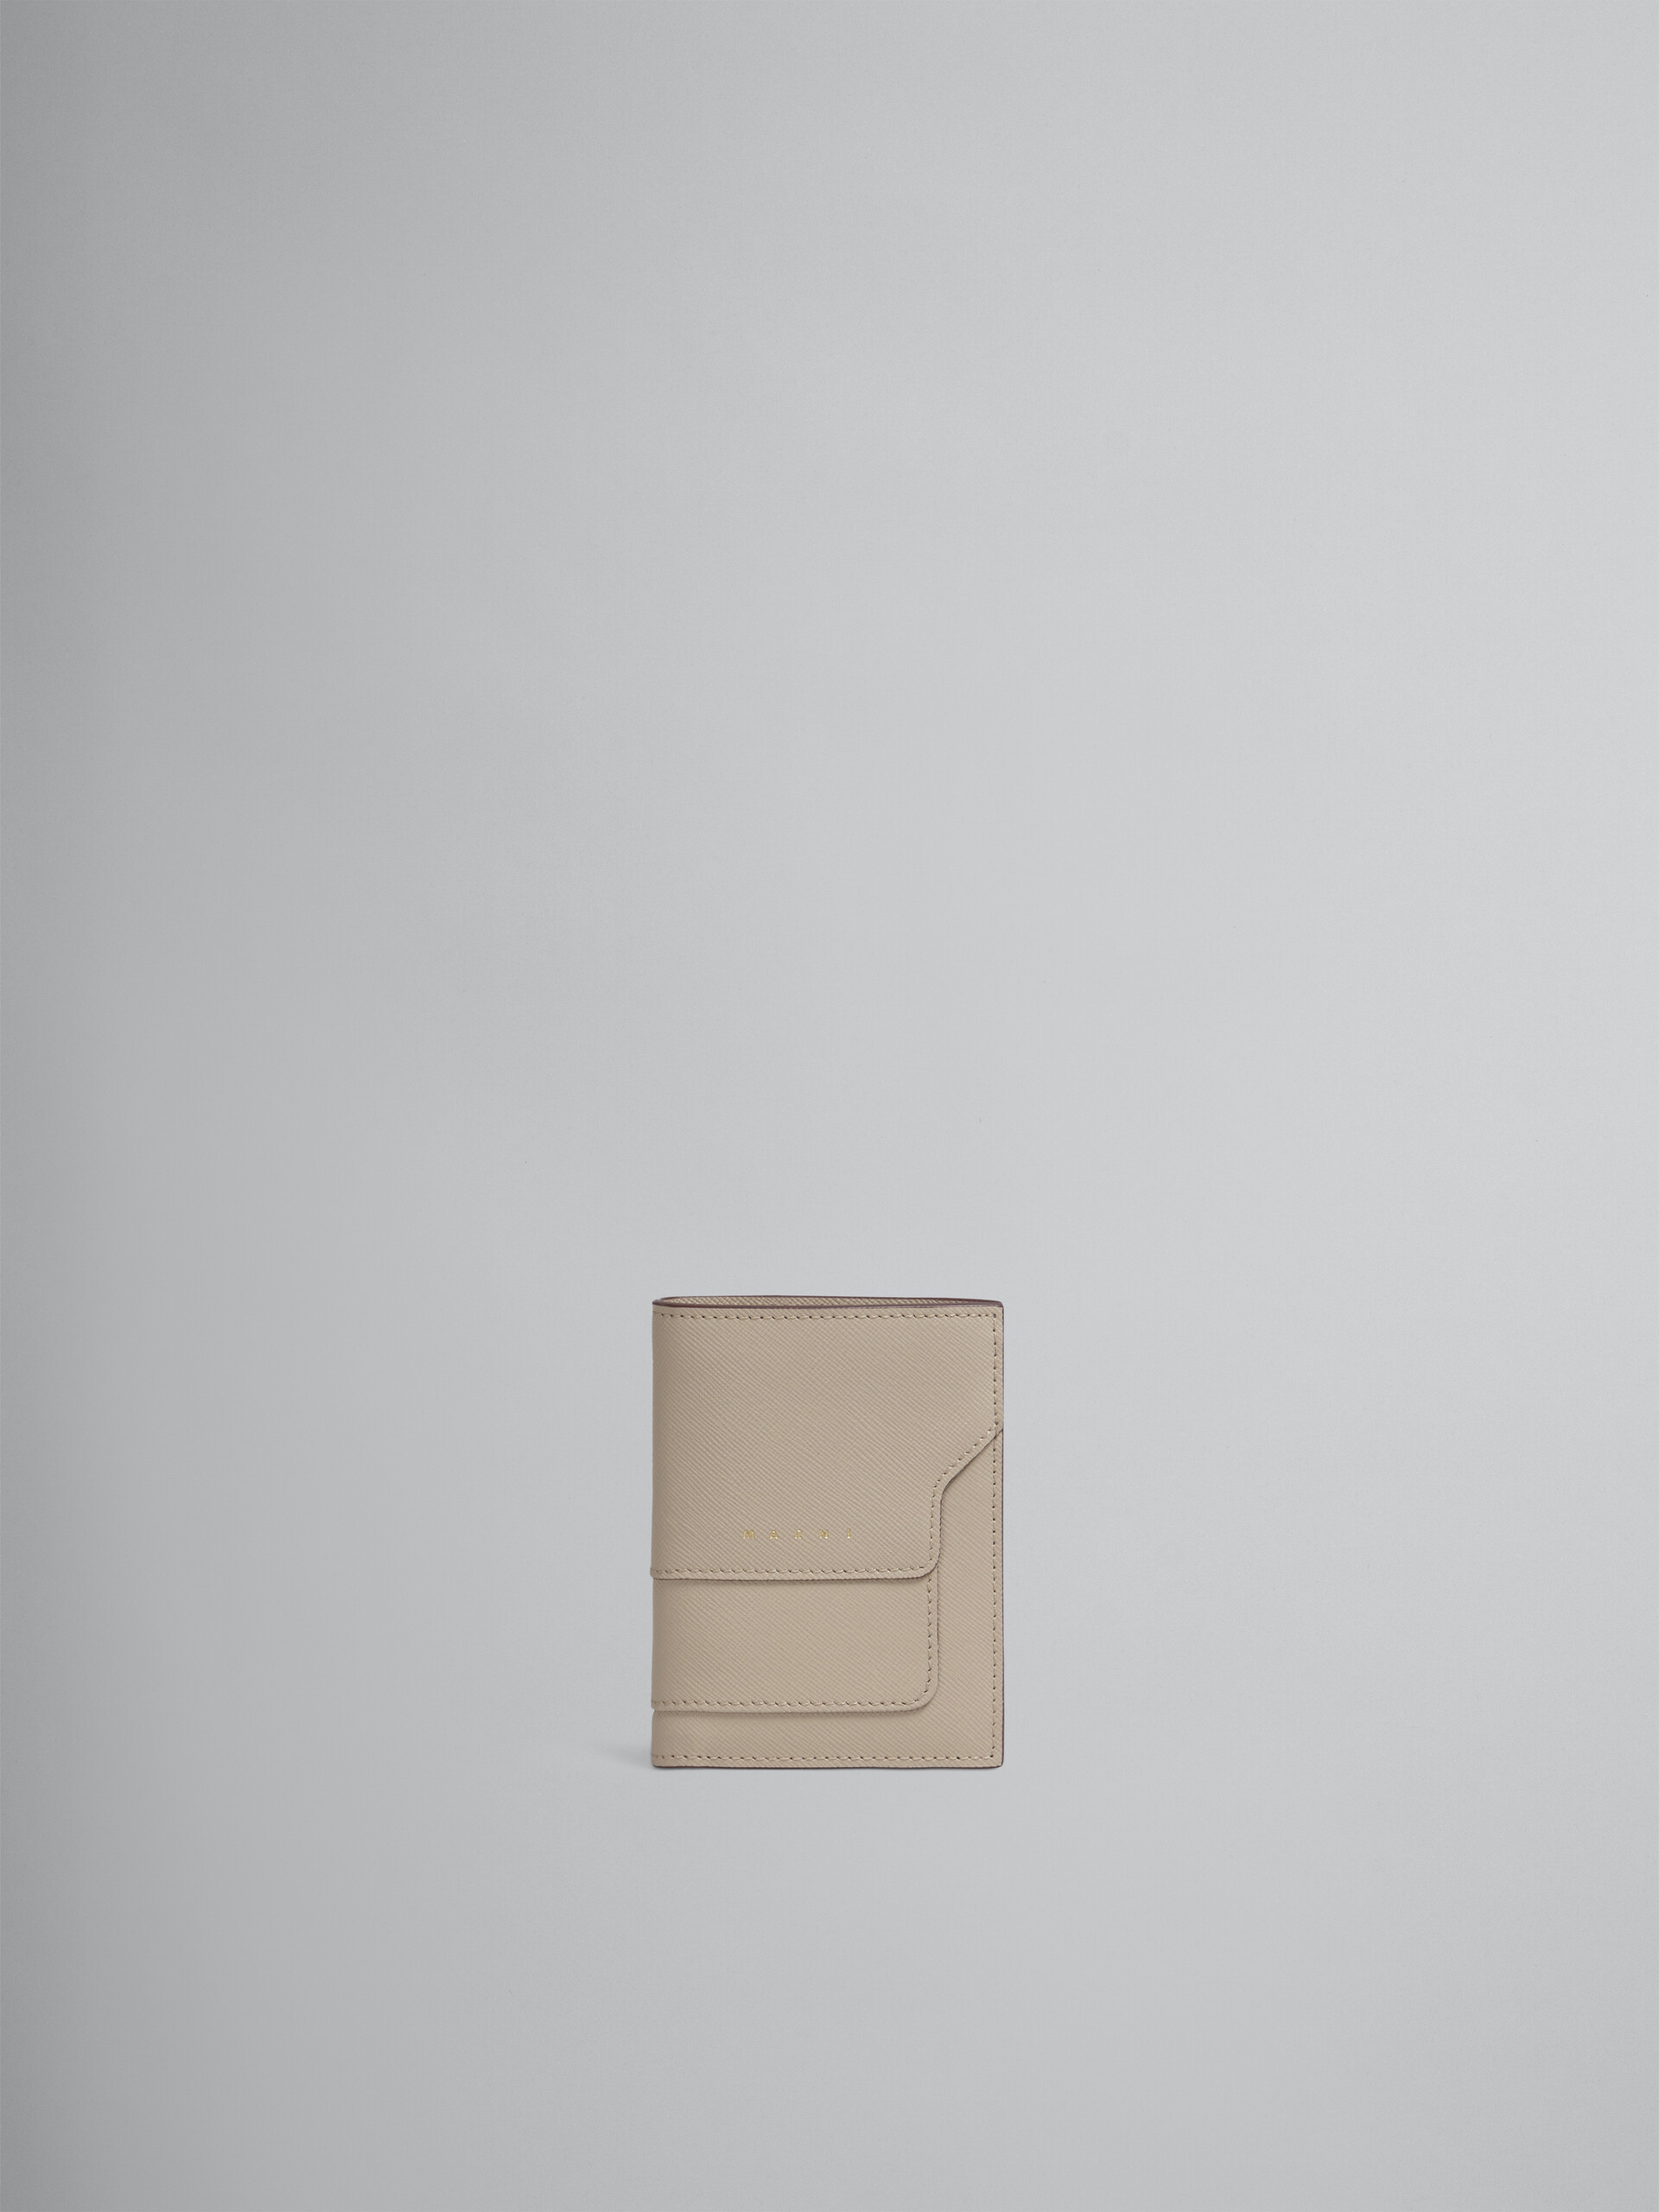 Beige saffiano leather bi-fold wallet - Wallets - Image 1